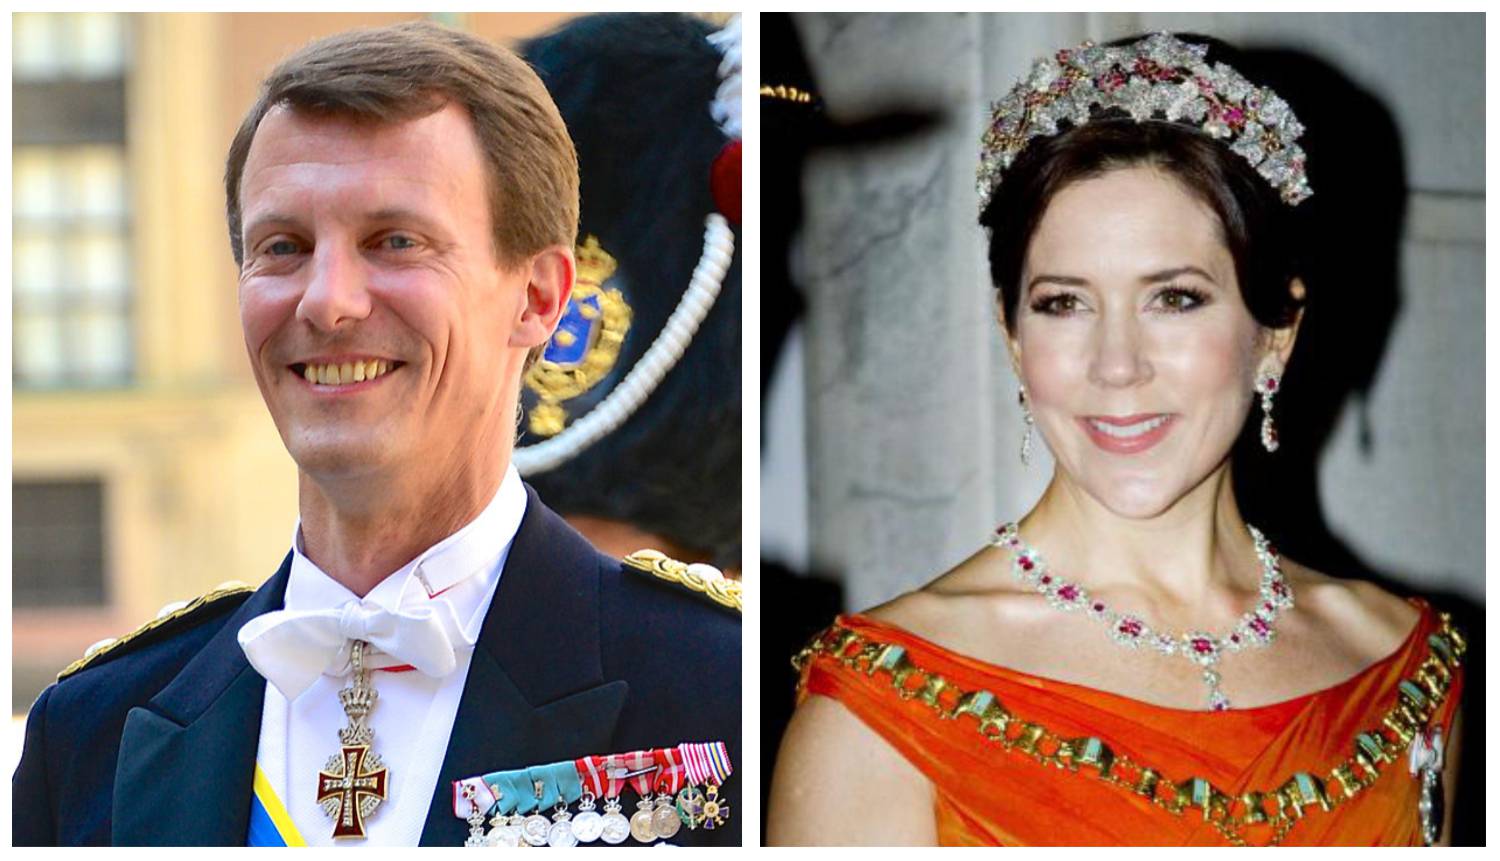 Danski princ je bio zaljubljen u bratovu ženu: Pokušao ju je poljubiti, no ona se izmaknula